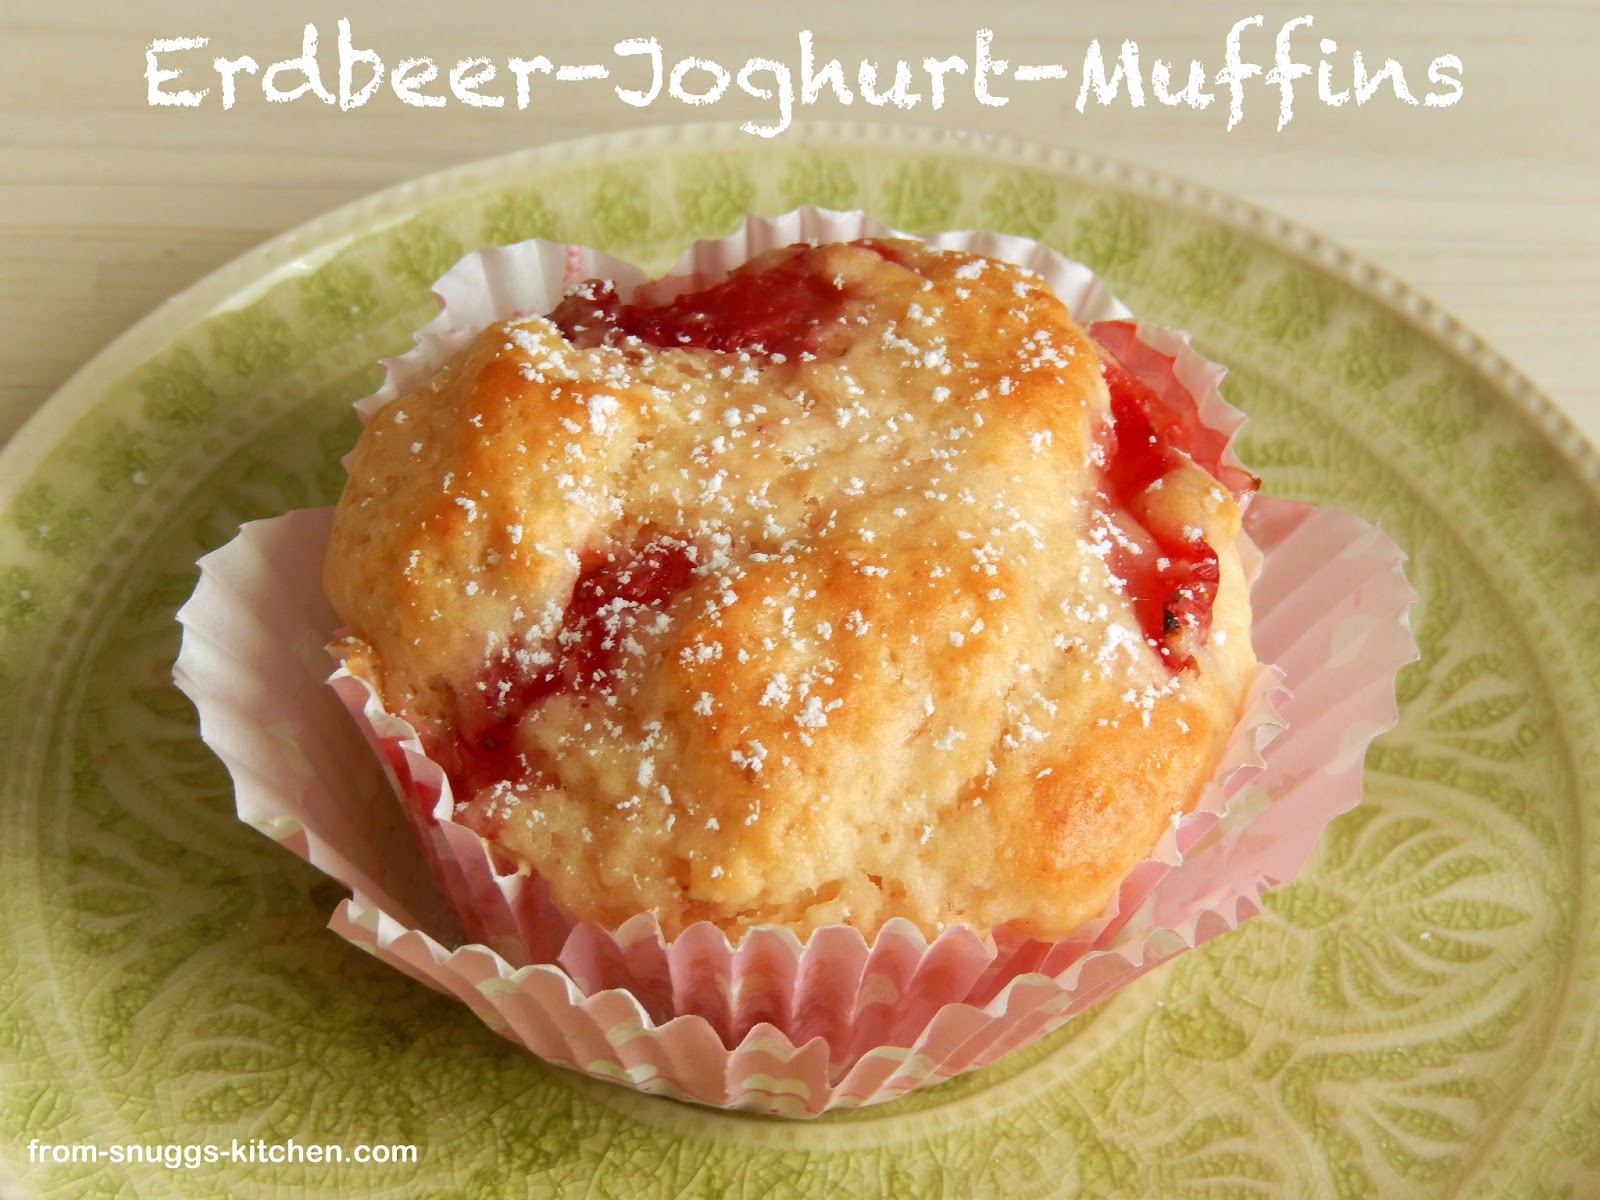 Erdbeer-Joghurt-Muffins - From-Snuggs-Kitchen